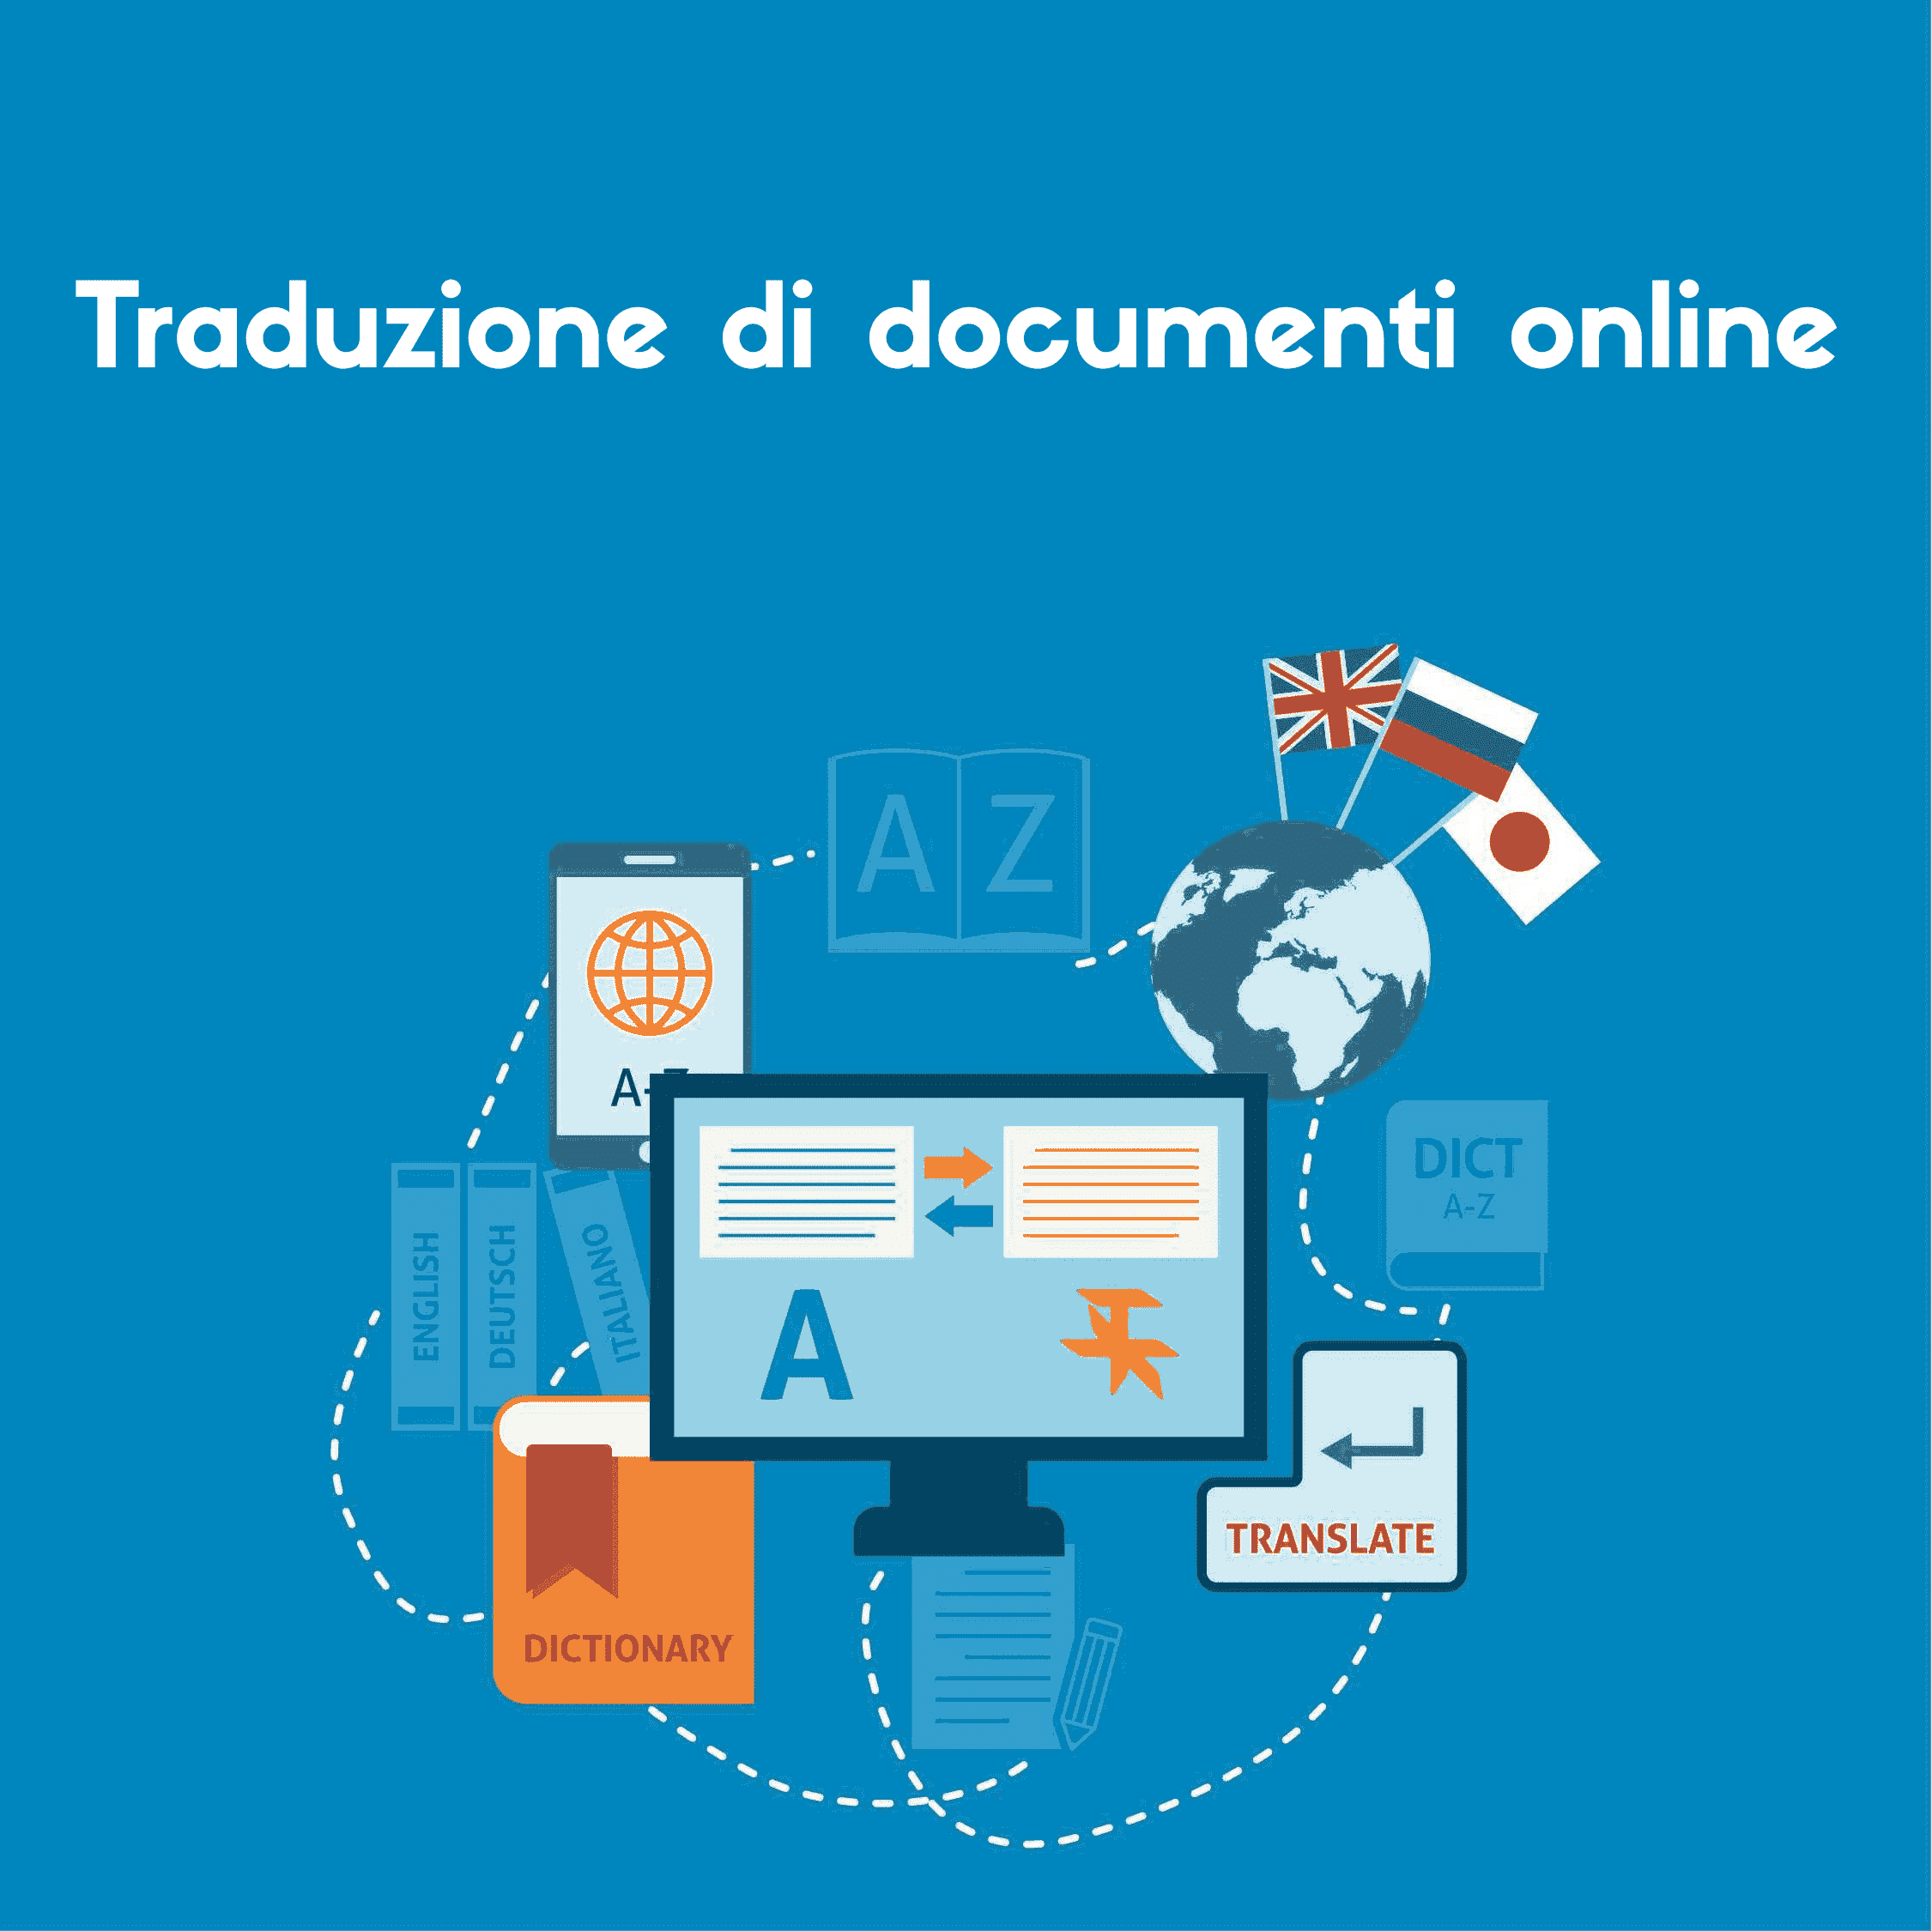 Questa immagine vi dà un'idea di come lo strumento di traduzione di documenti online lavorerà per tradurre il vostro documento.